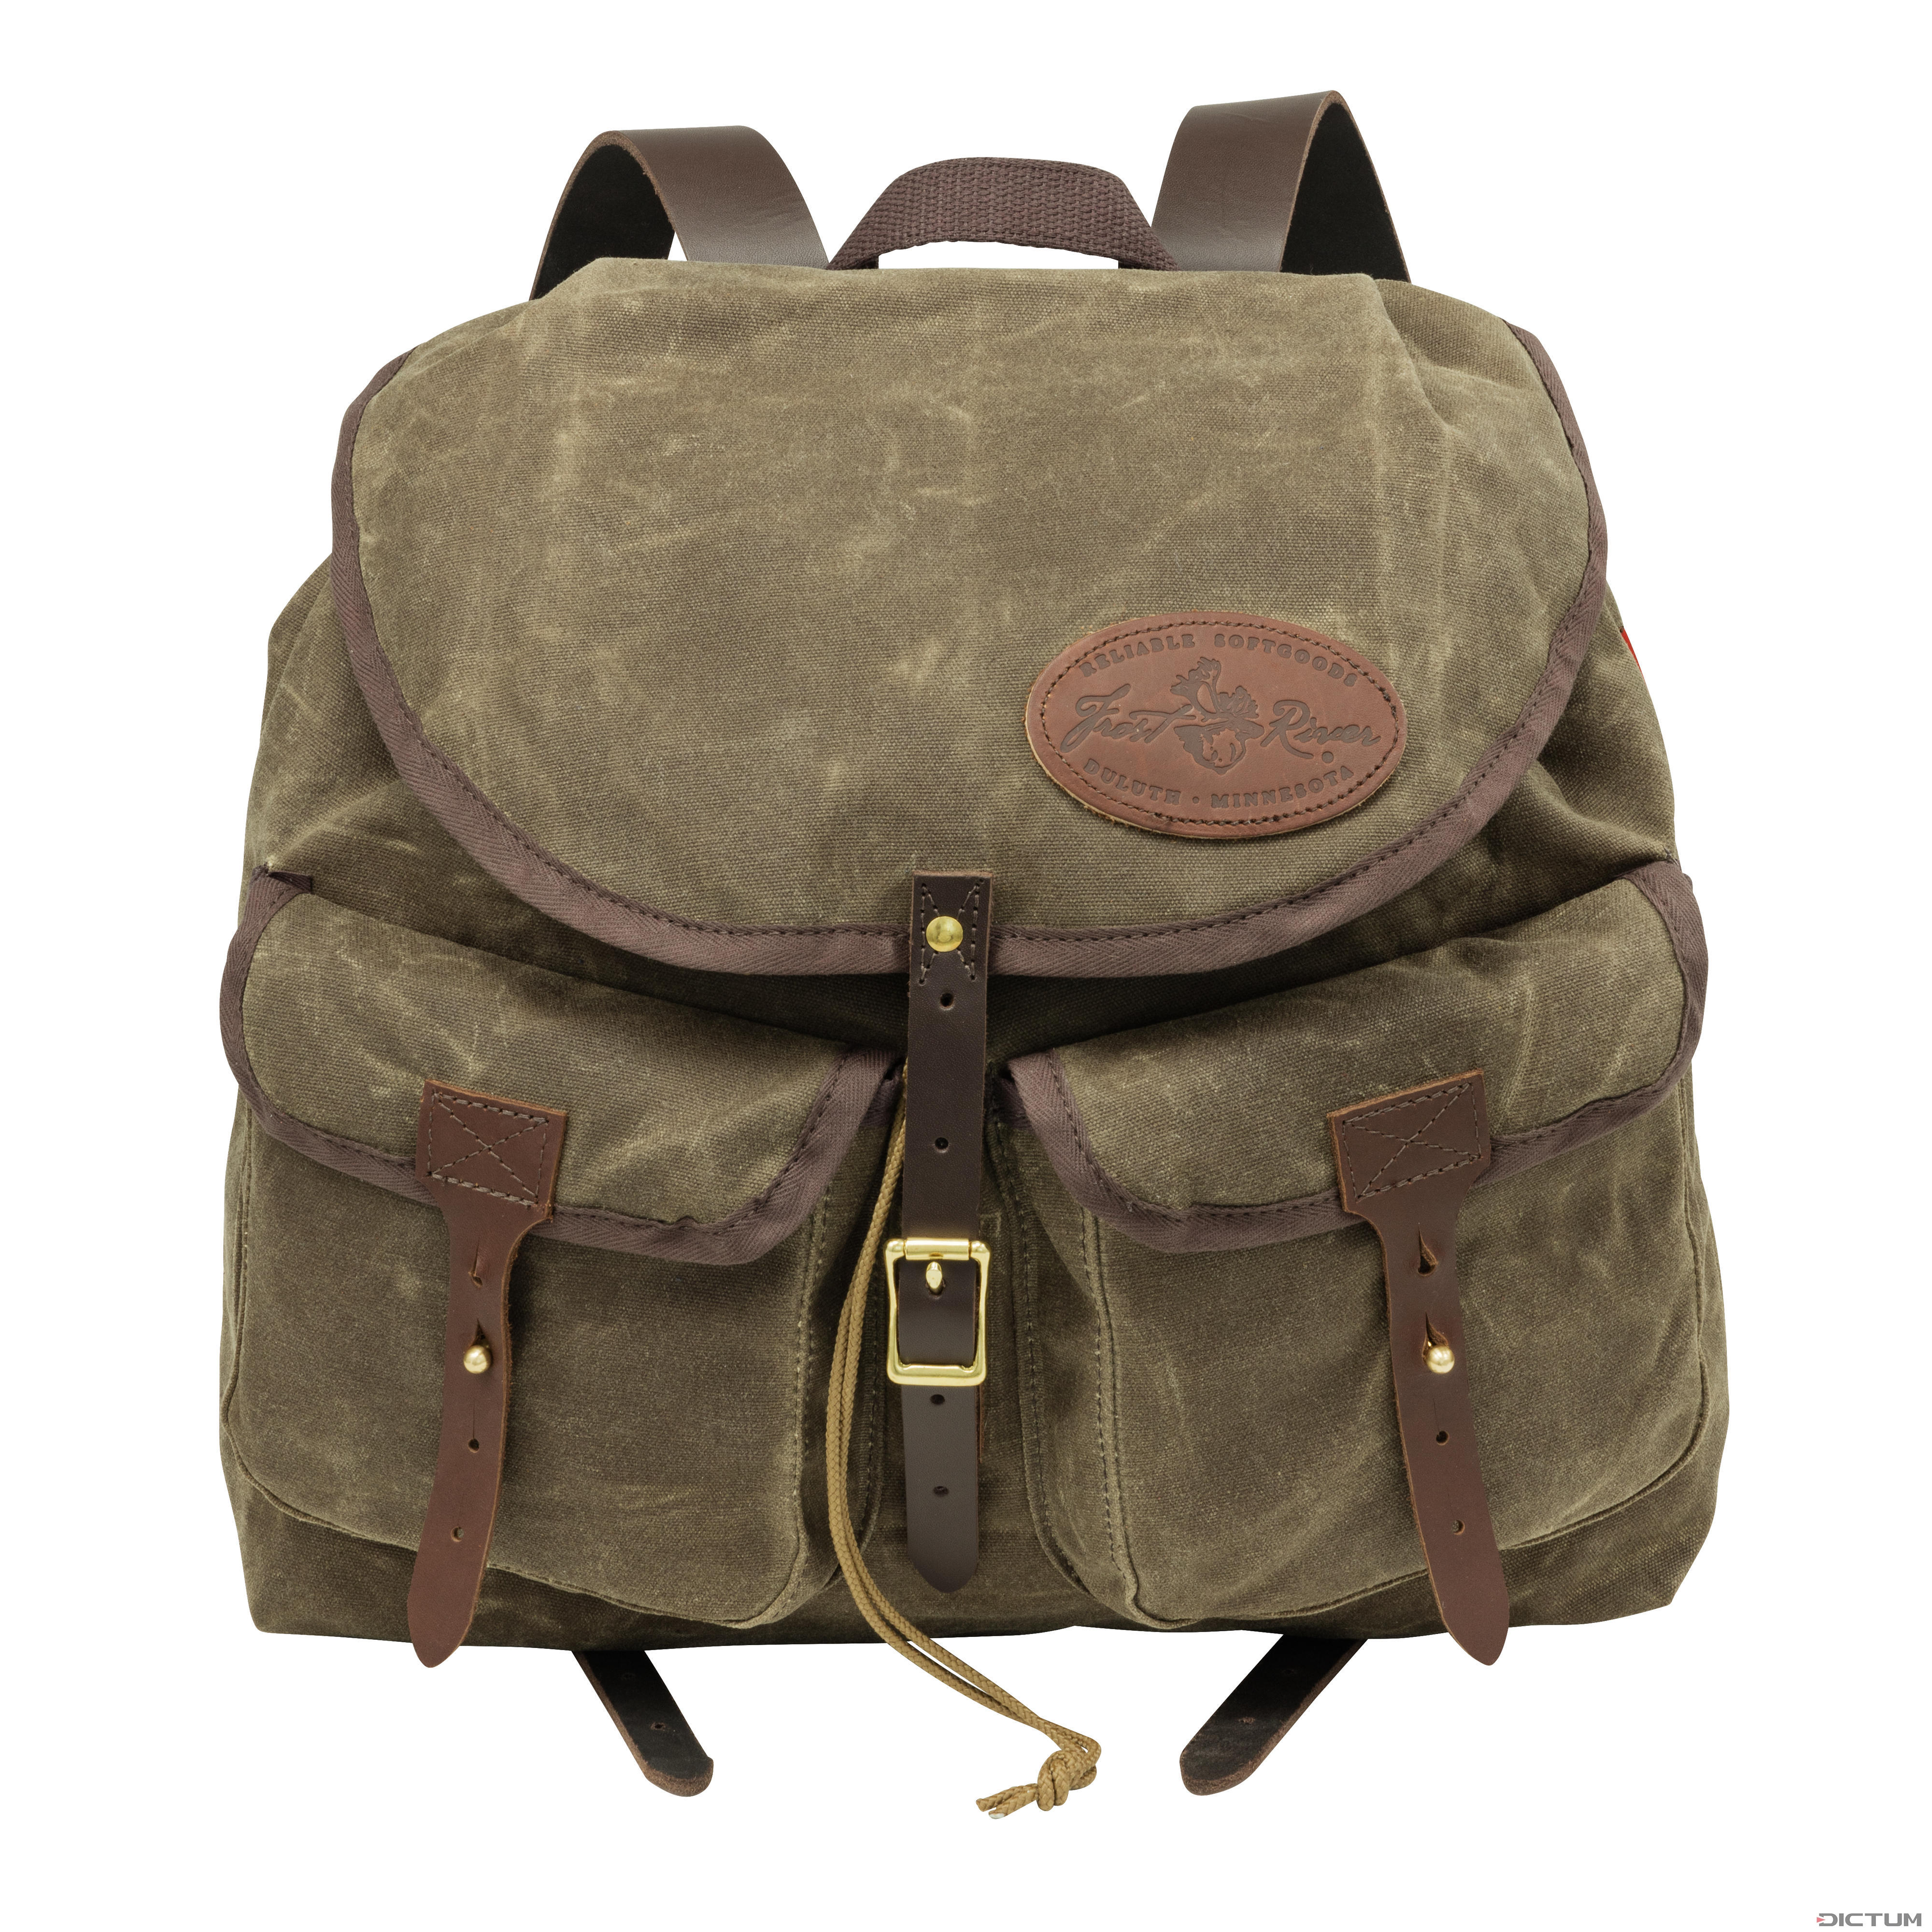 Frost River Geologist Bushcraft Backpack, Dark Olive | Backpacks & Bags ...